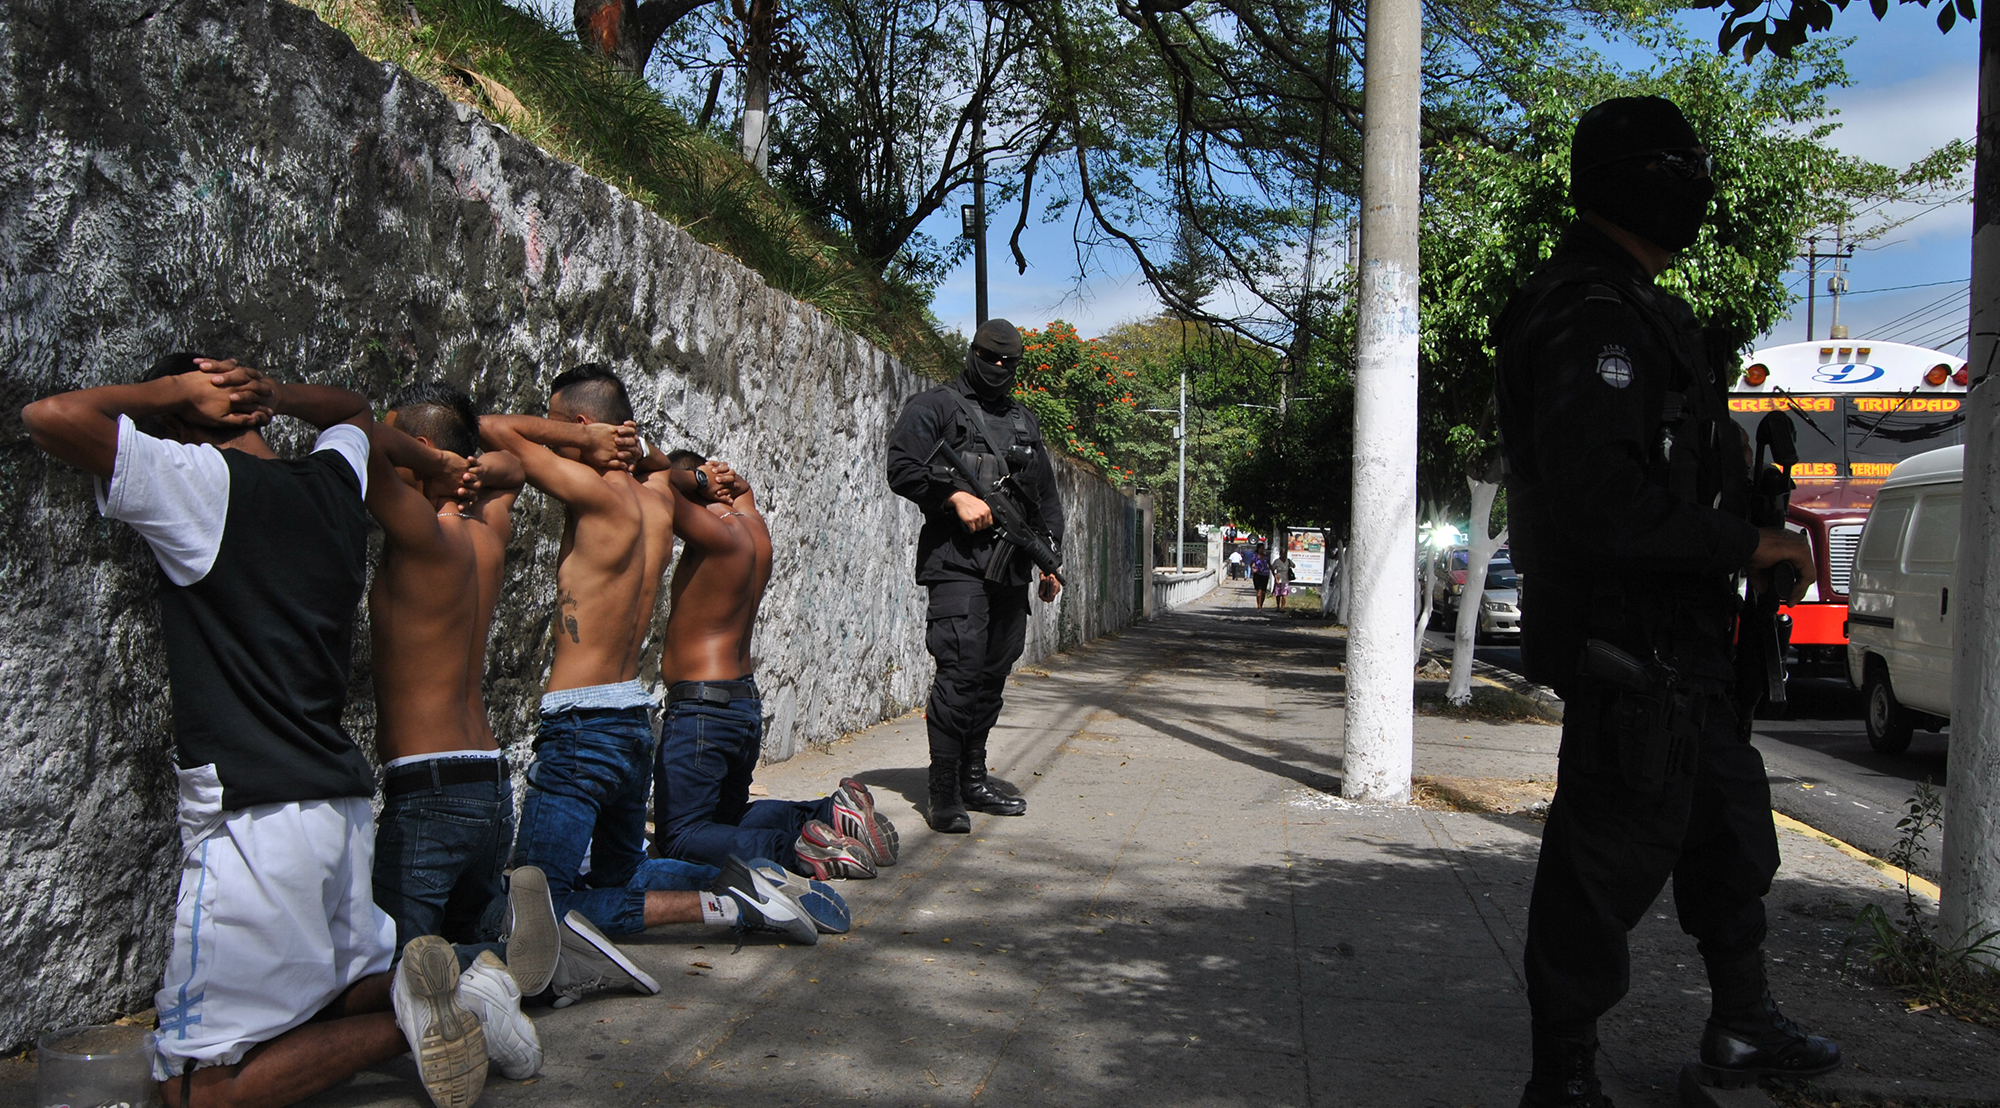 Prévention de la violence : réintégration sociale des jeunes migrants expulsés de retour au Salvador